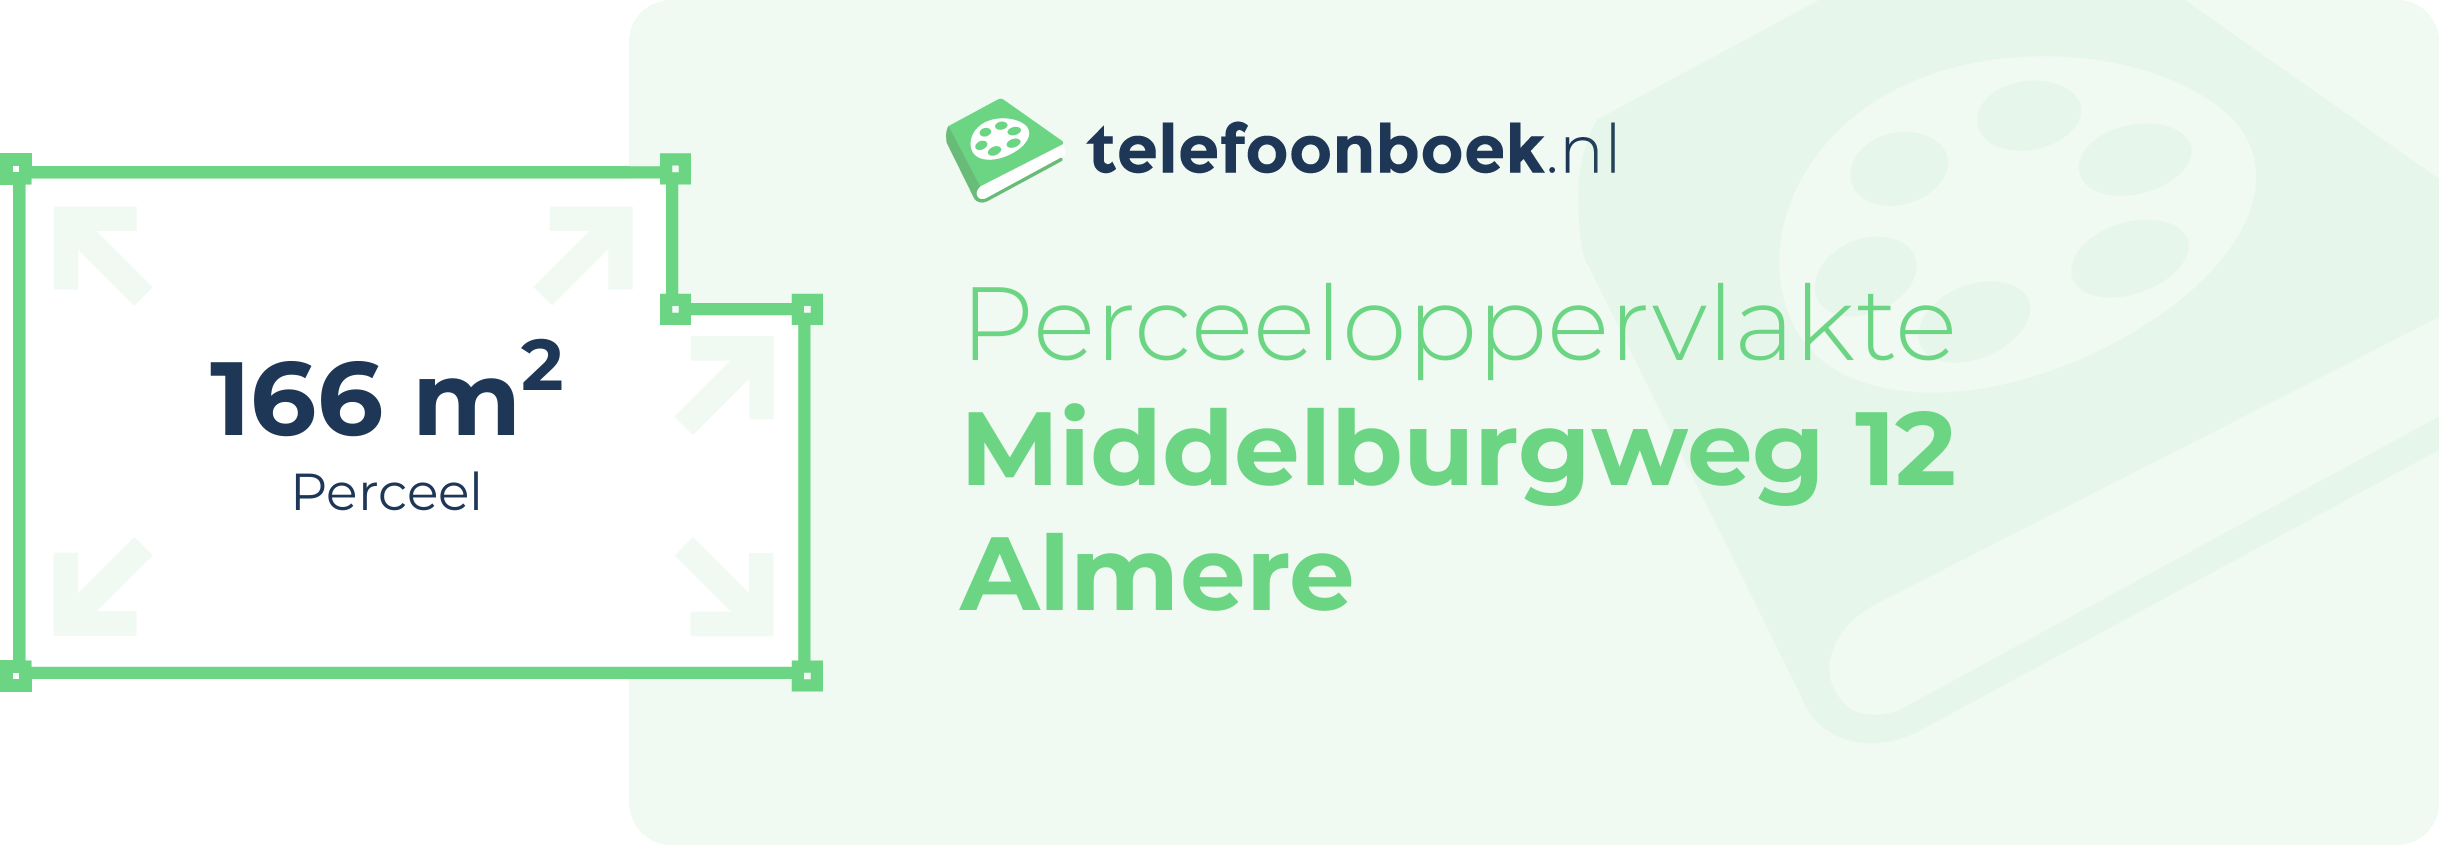 Perceeloppervlakte Middelburgweg 12 Almere